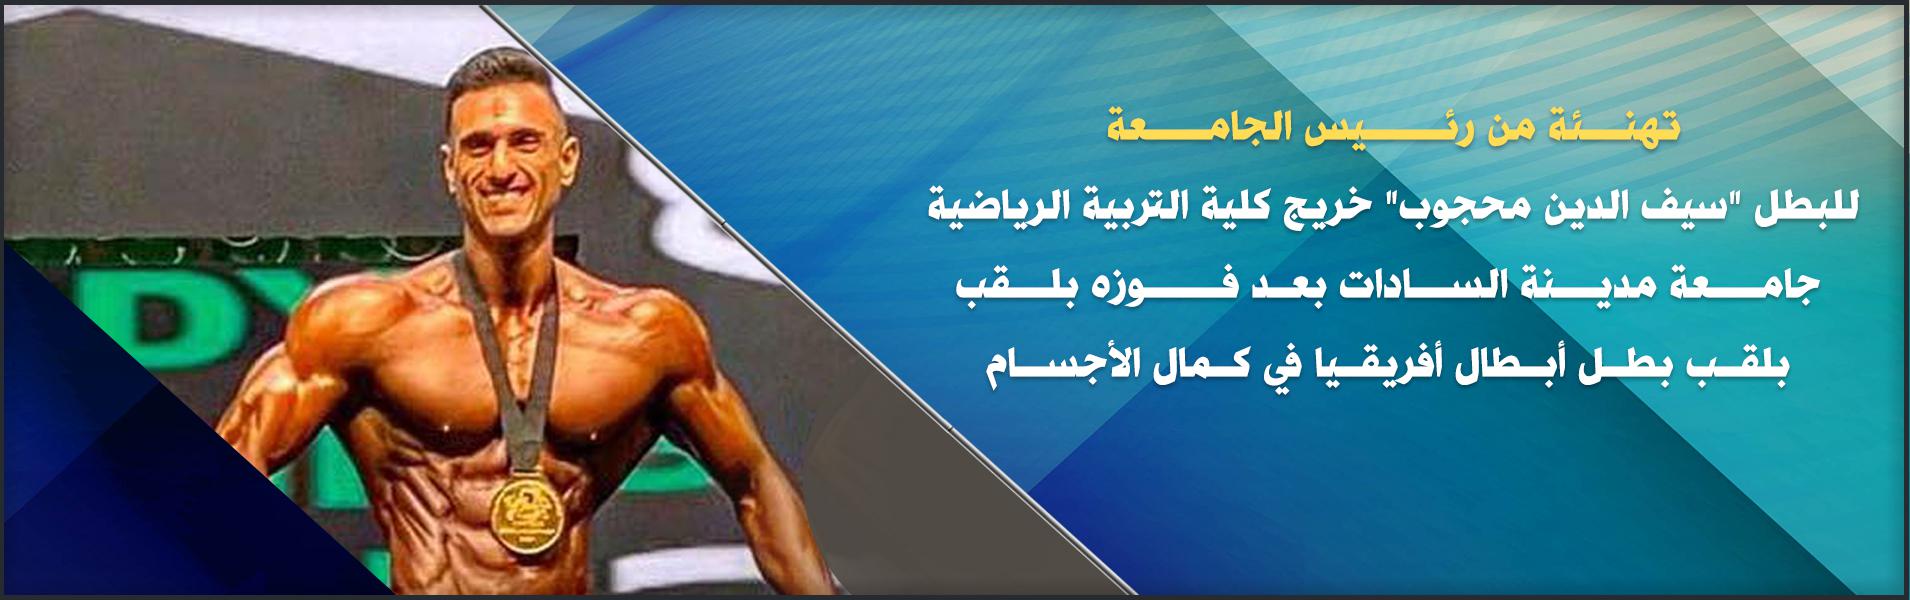 رئيس جامعة السادات تهنىء البطل “سيف محجوب” بفوزه بلقب بطل أبطال أفريقيا في كمال الأجسام